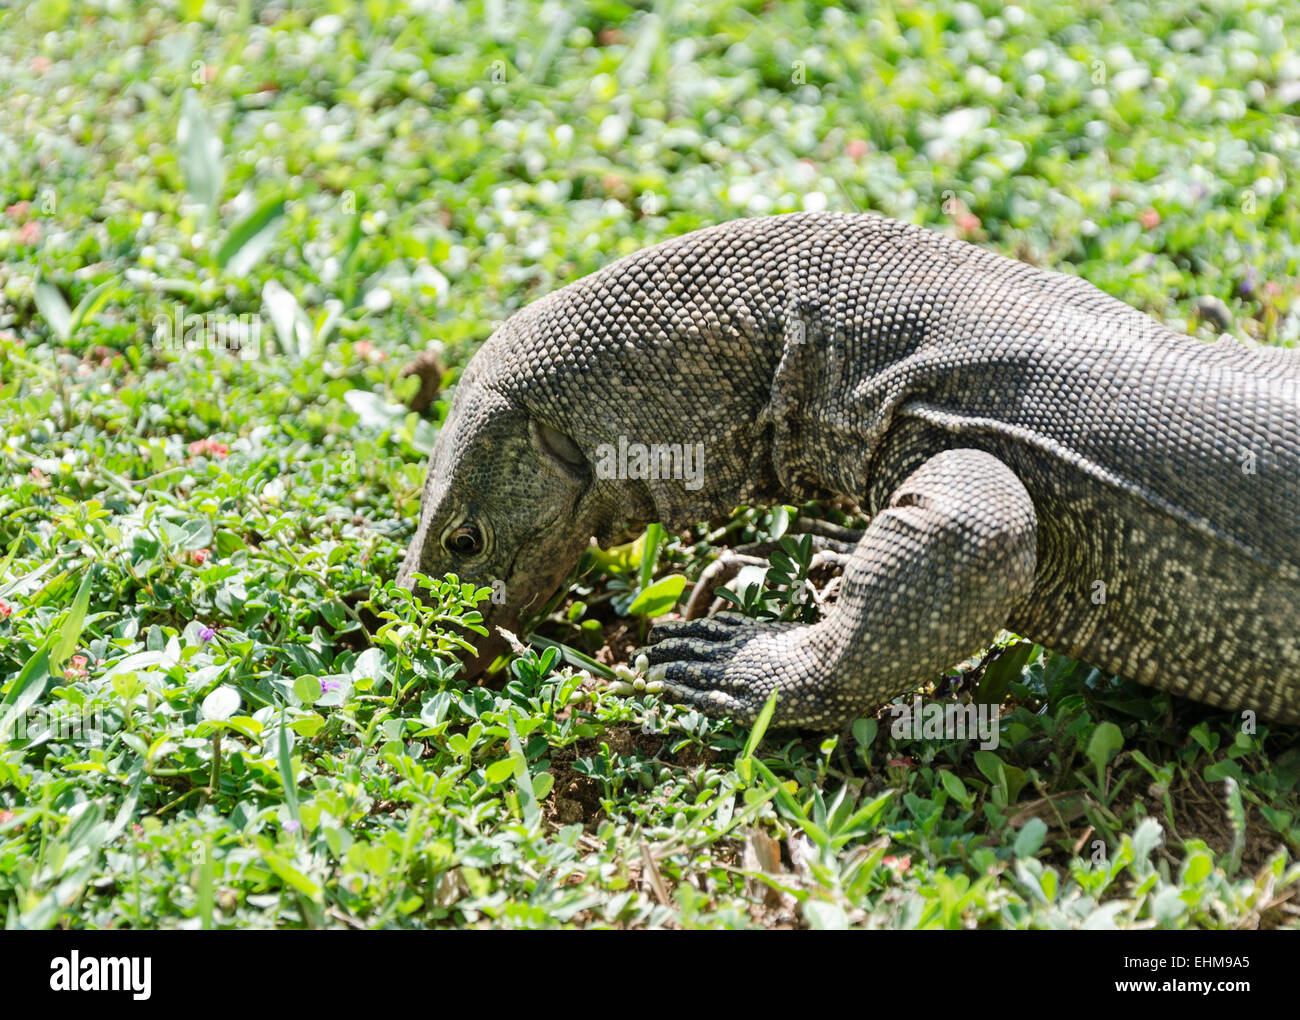 Il Bengala monitor (Varanus bengalensis) o comuni monitor indiano, è un monitor lizard Foto Stock